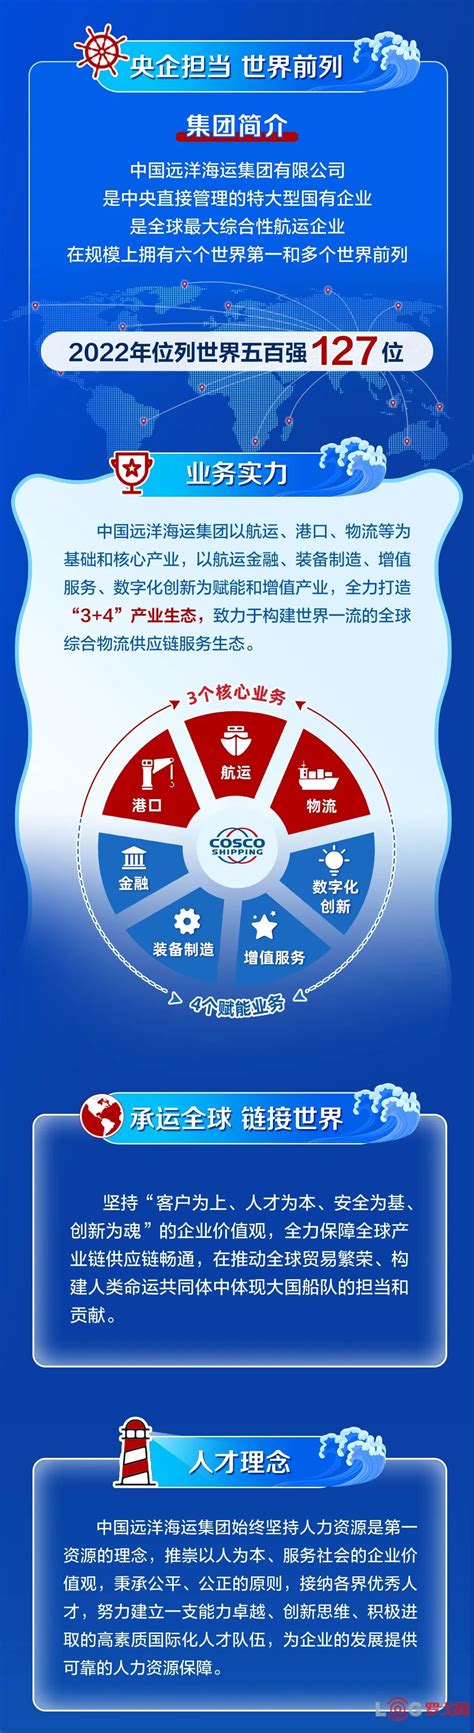 【罗戈网】中国远洋海运集团2023全球校园招聘正式启动